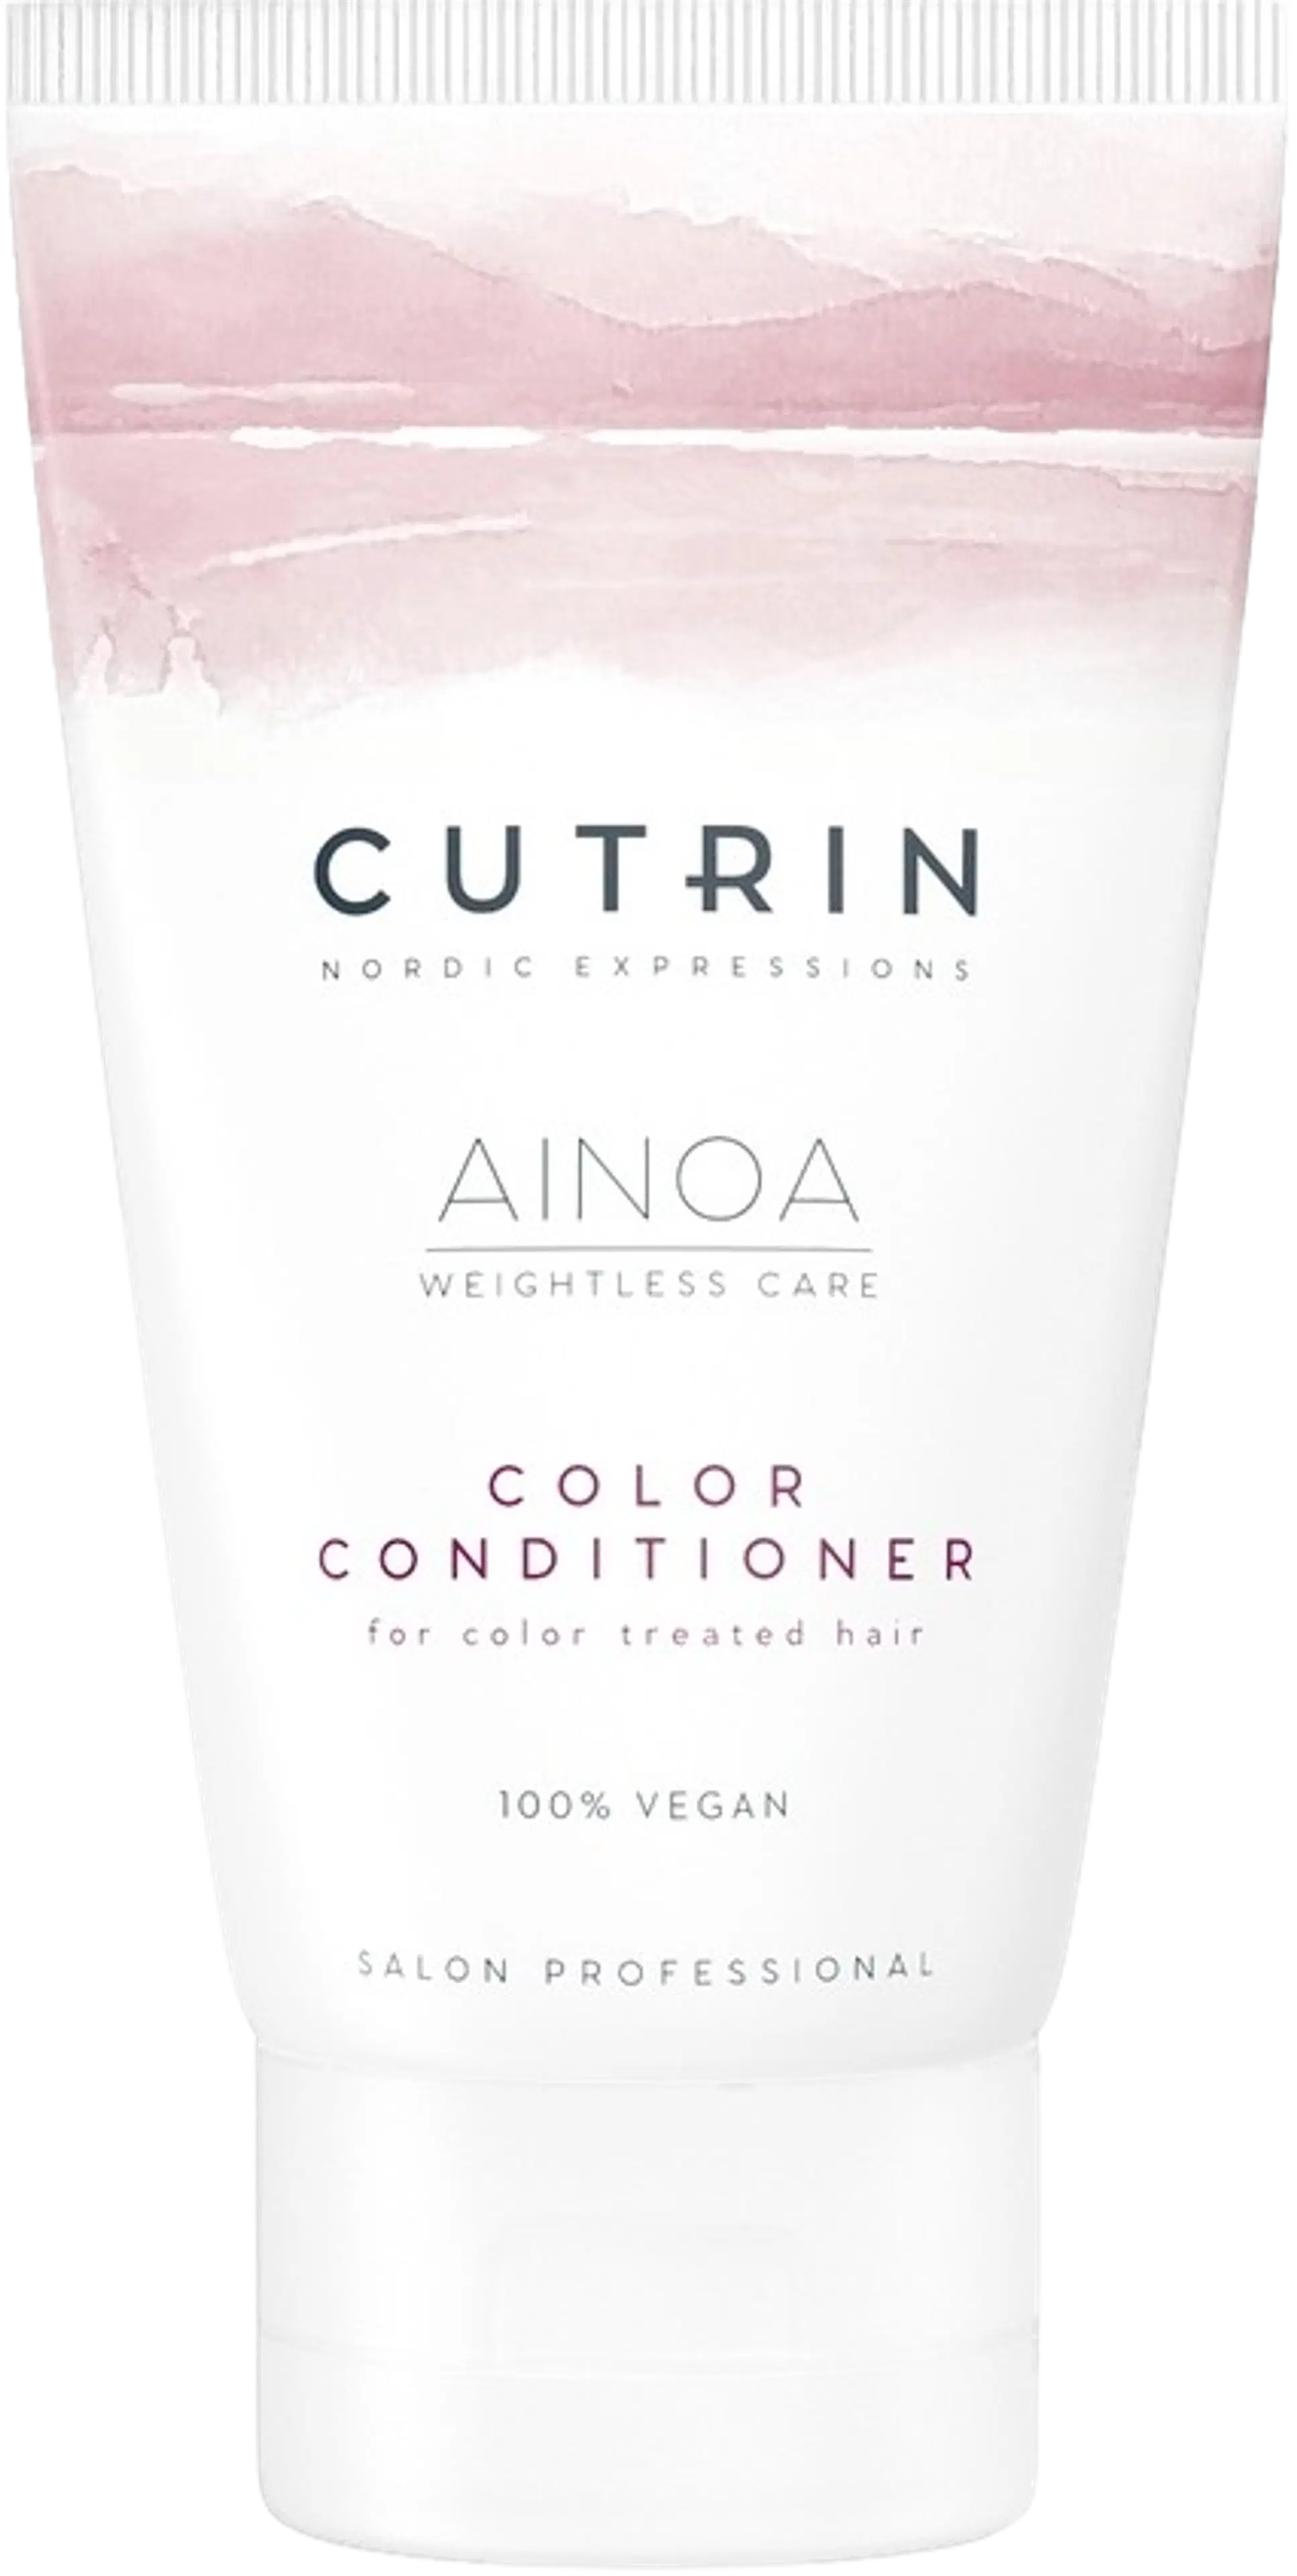 Cutrin Ainoa Color Conditioner hoitoaine 75 ml